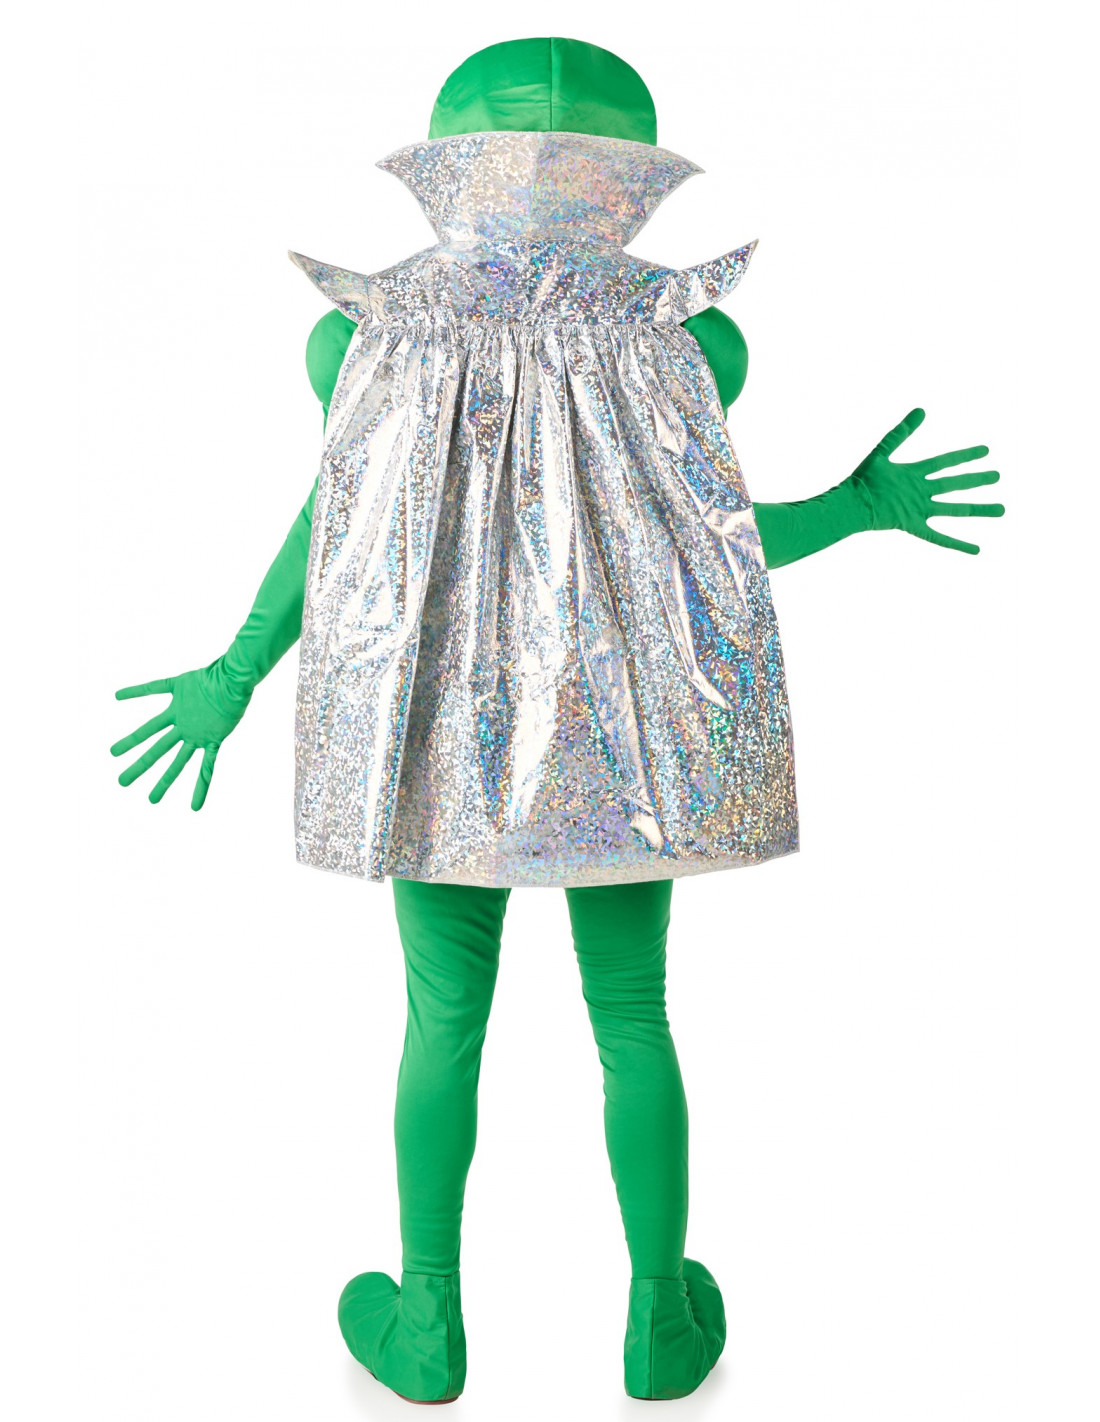 Comprar online Disfraz de Alien Maligno para adulto